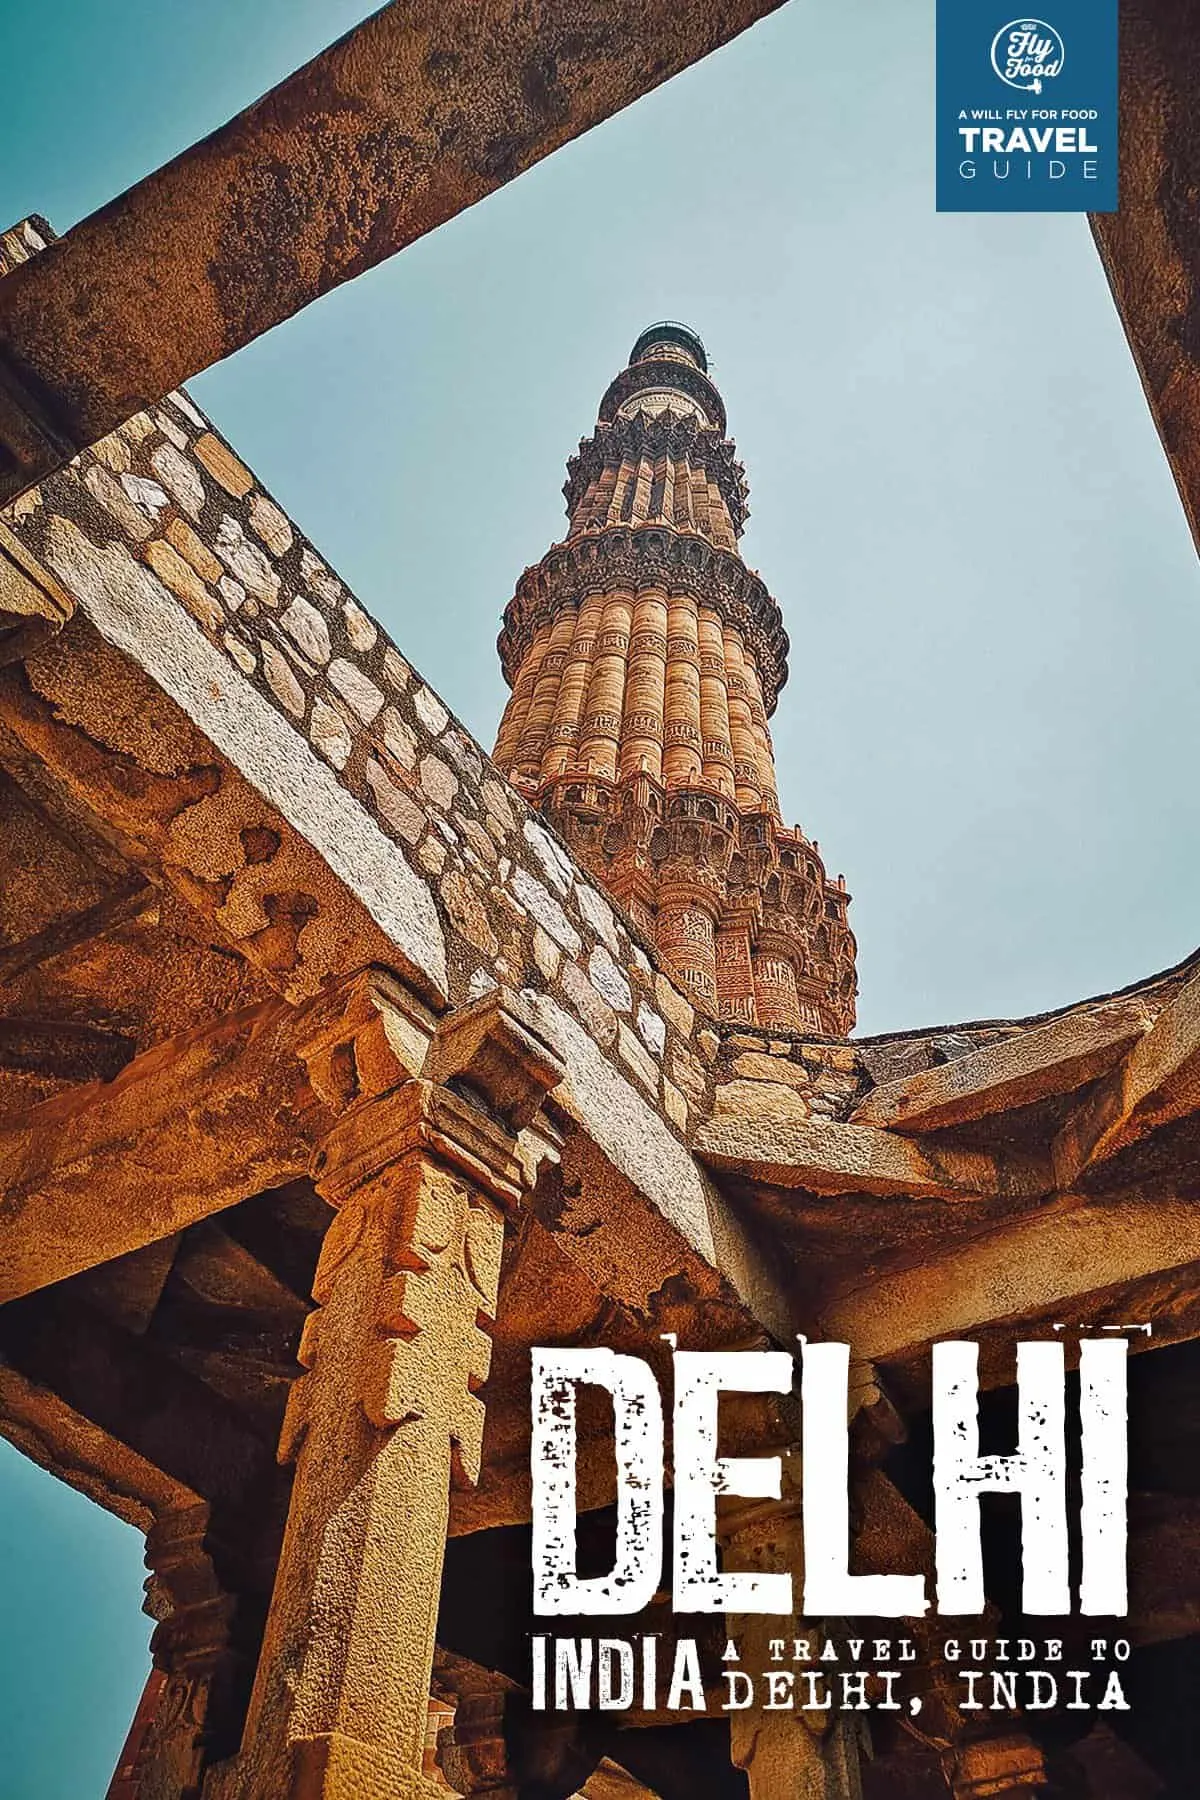 Qutub Minar in Delhi, India